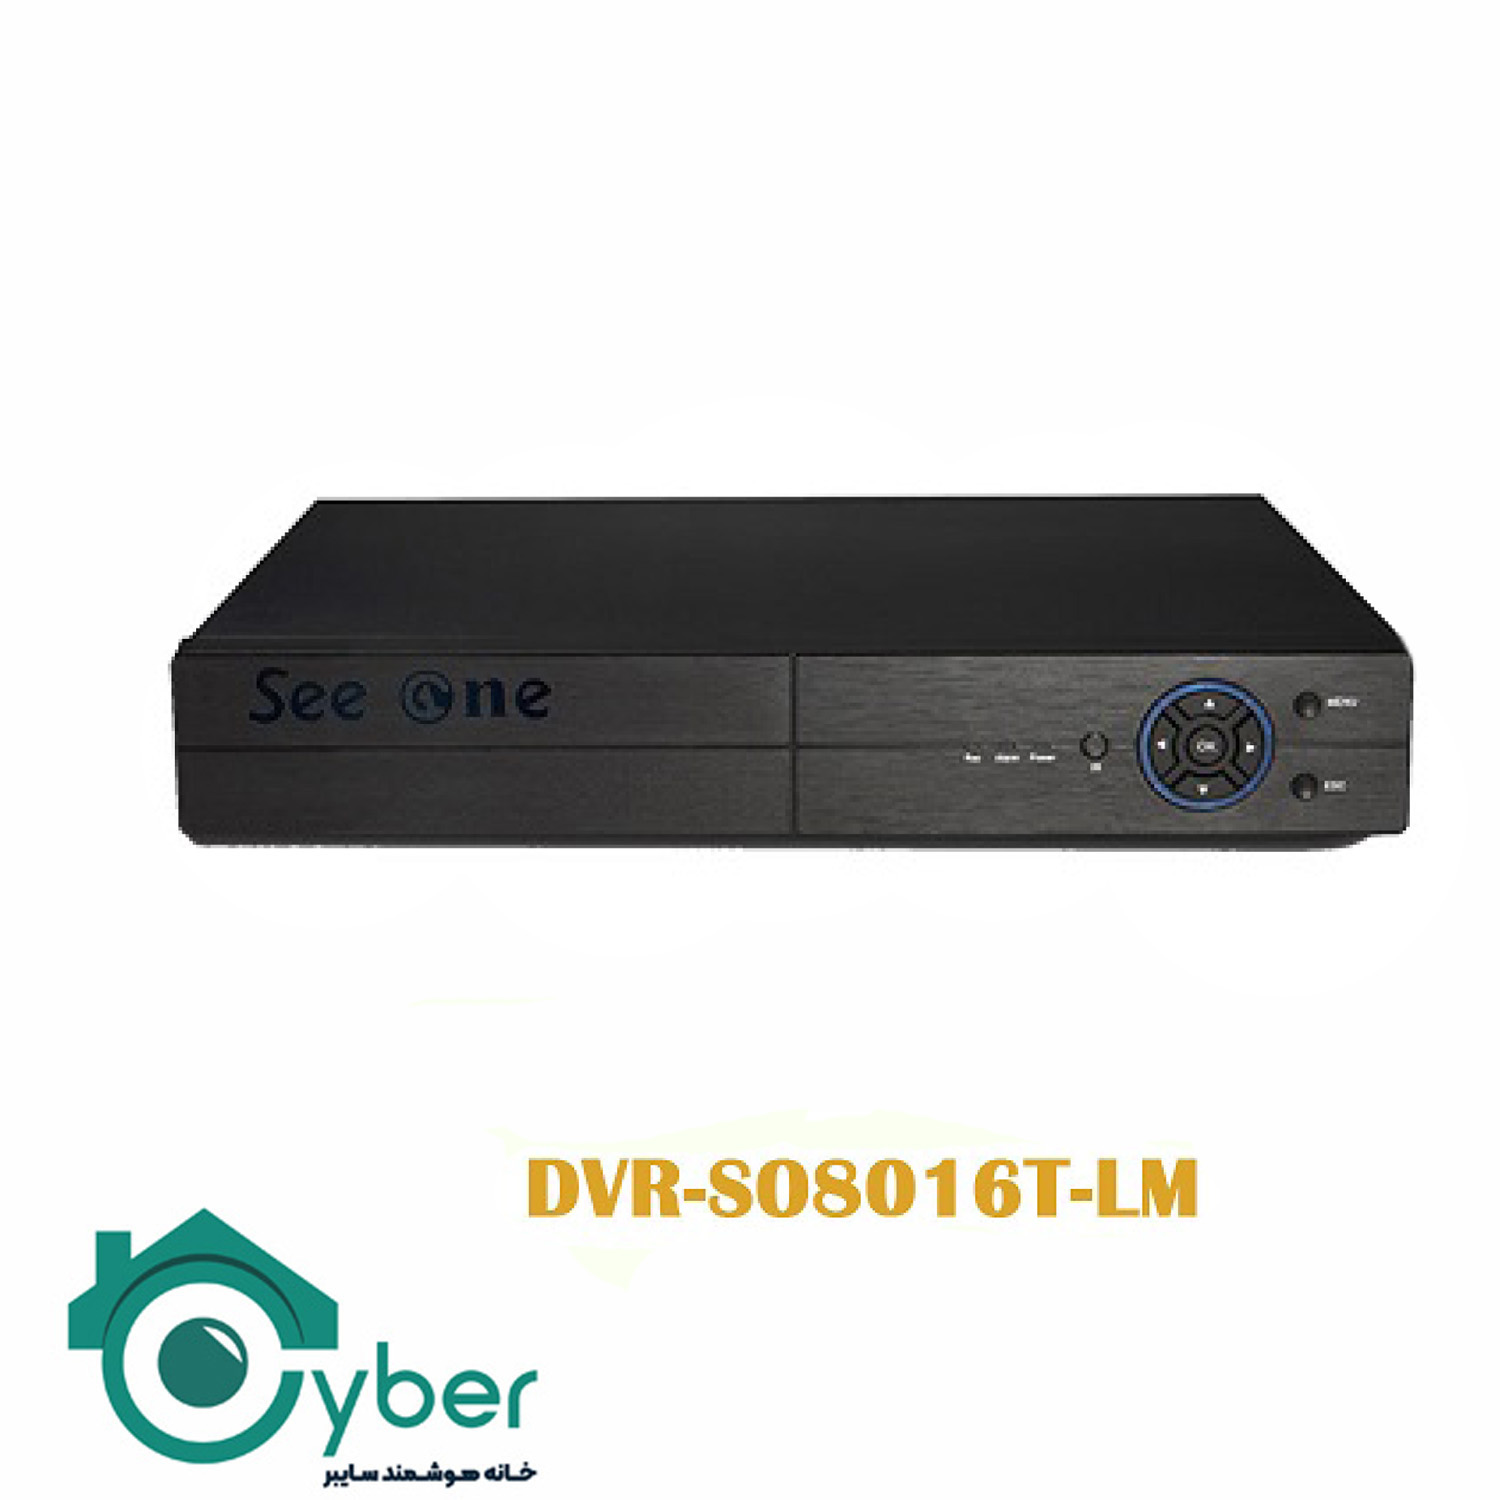 دستگاه ضبط تصاویر 16 کانال DVR-S08016T-LM مدل Seeone سیوان